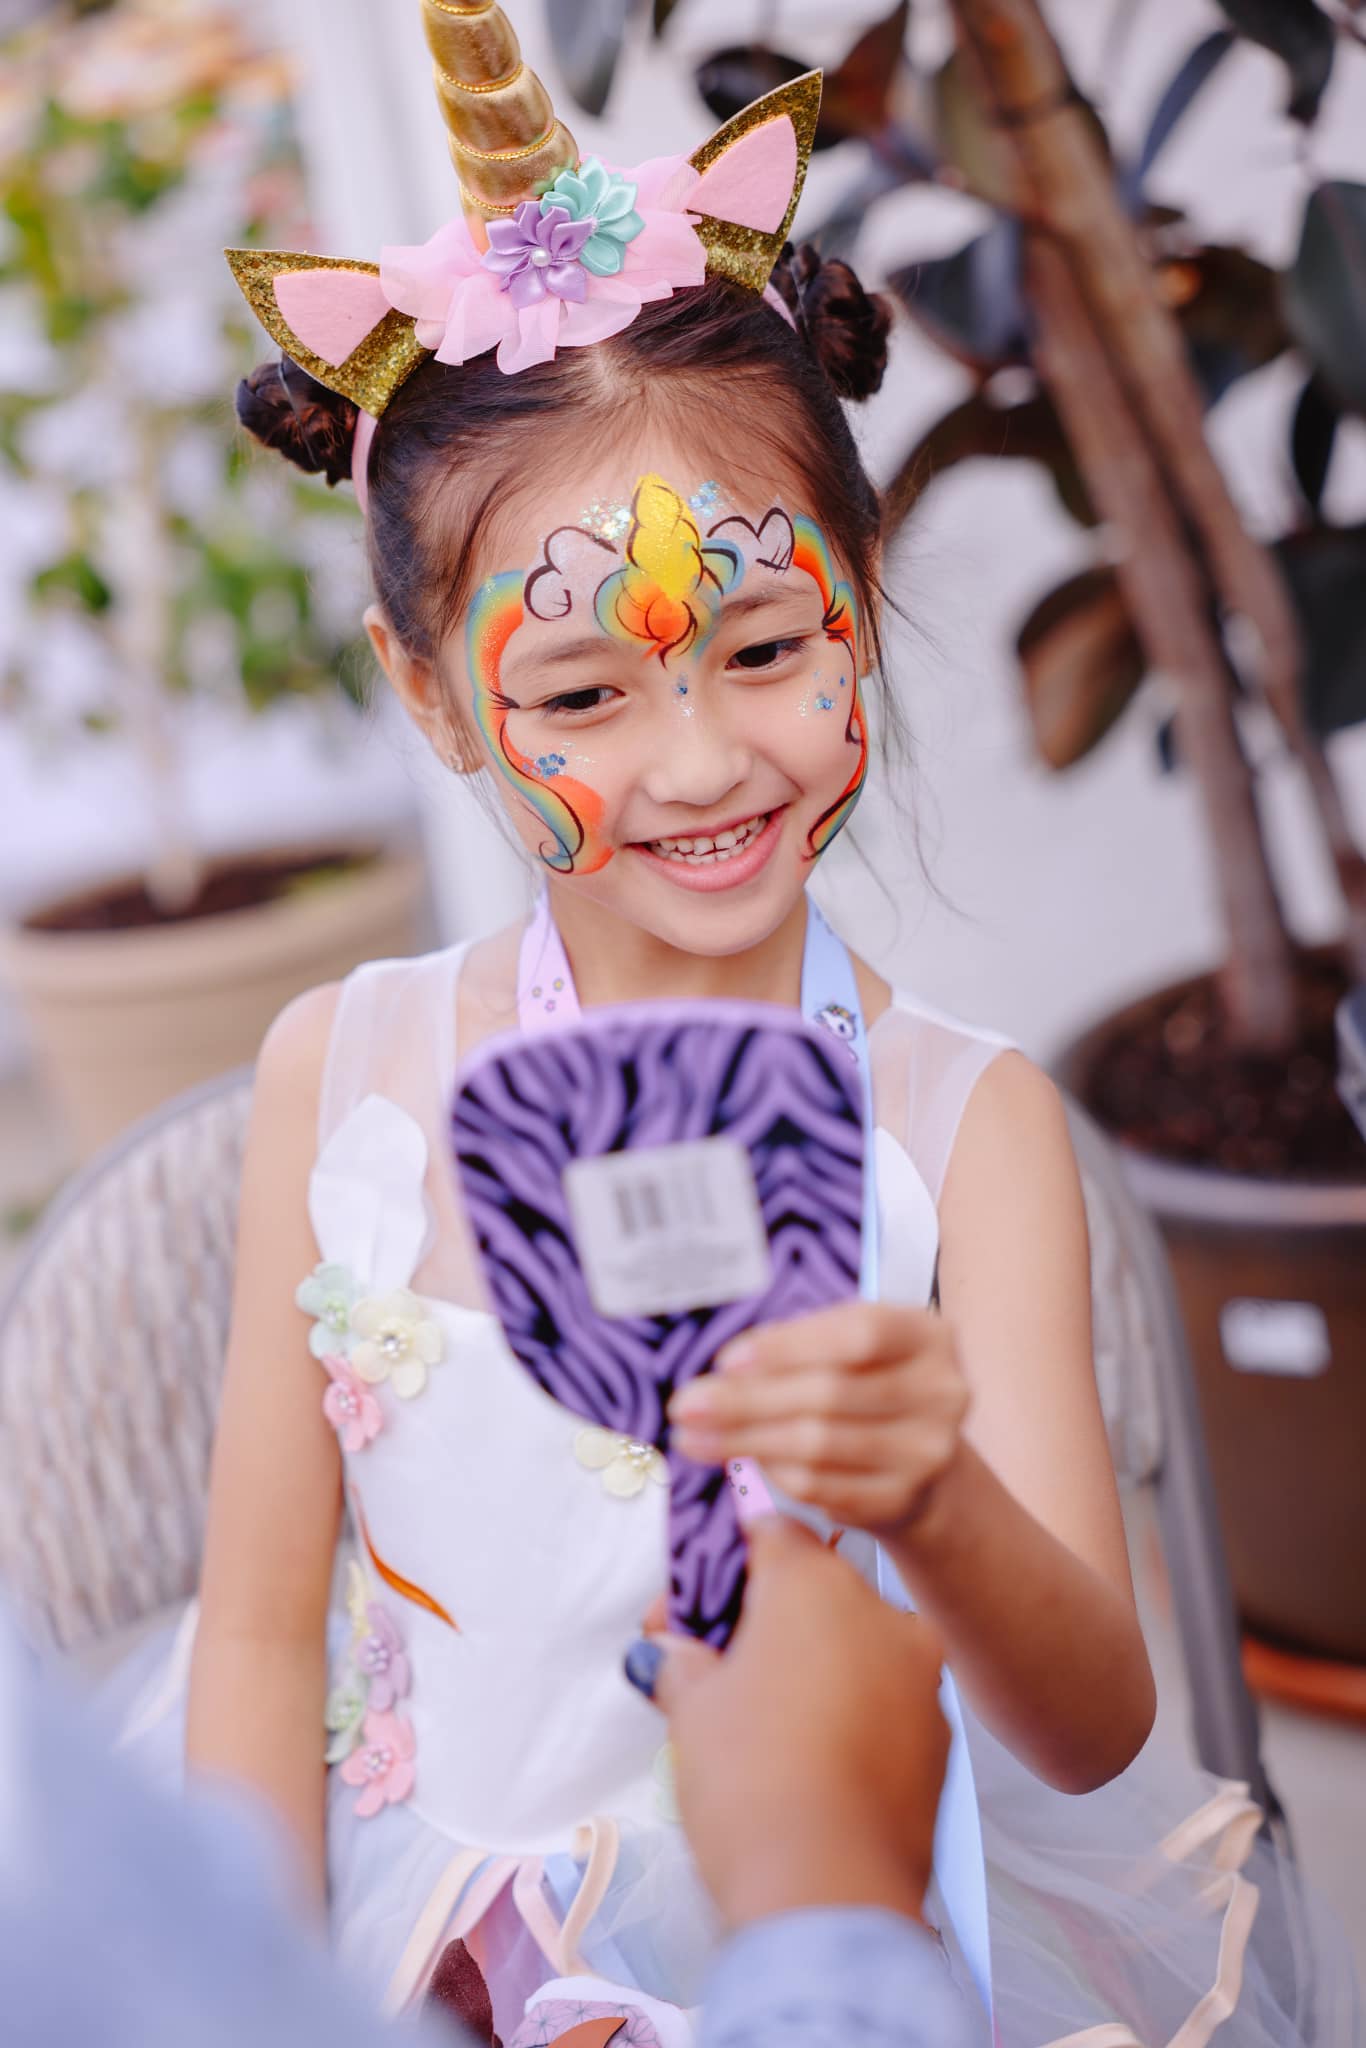 Con gái Hoa hậu Hà Kiều Anh 6 tuổi xinh như công chúa đời thực, sao Việt khen nức nở - 4